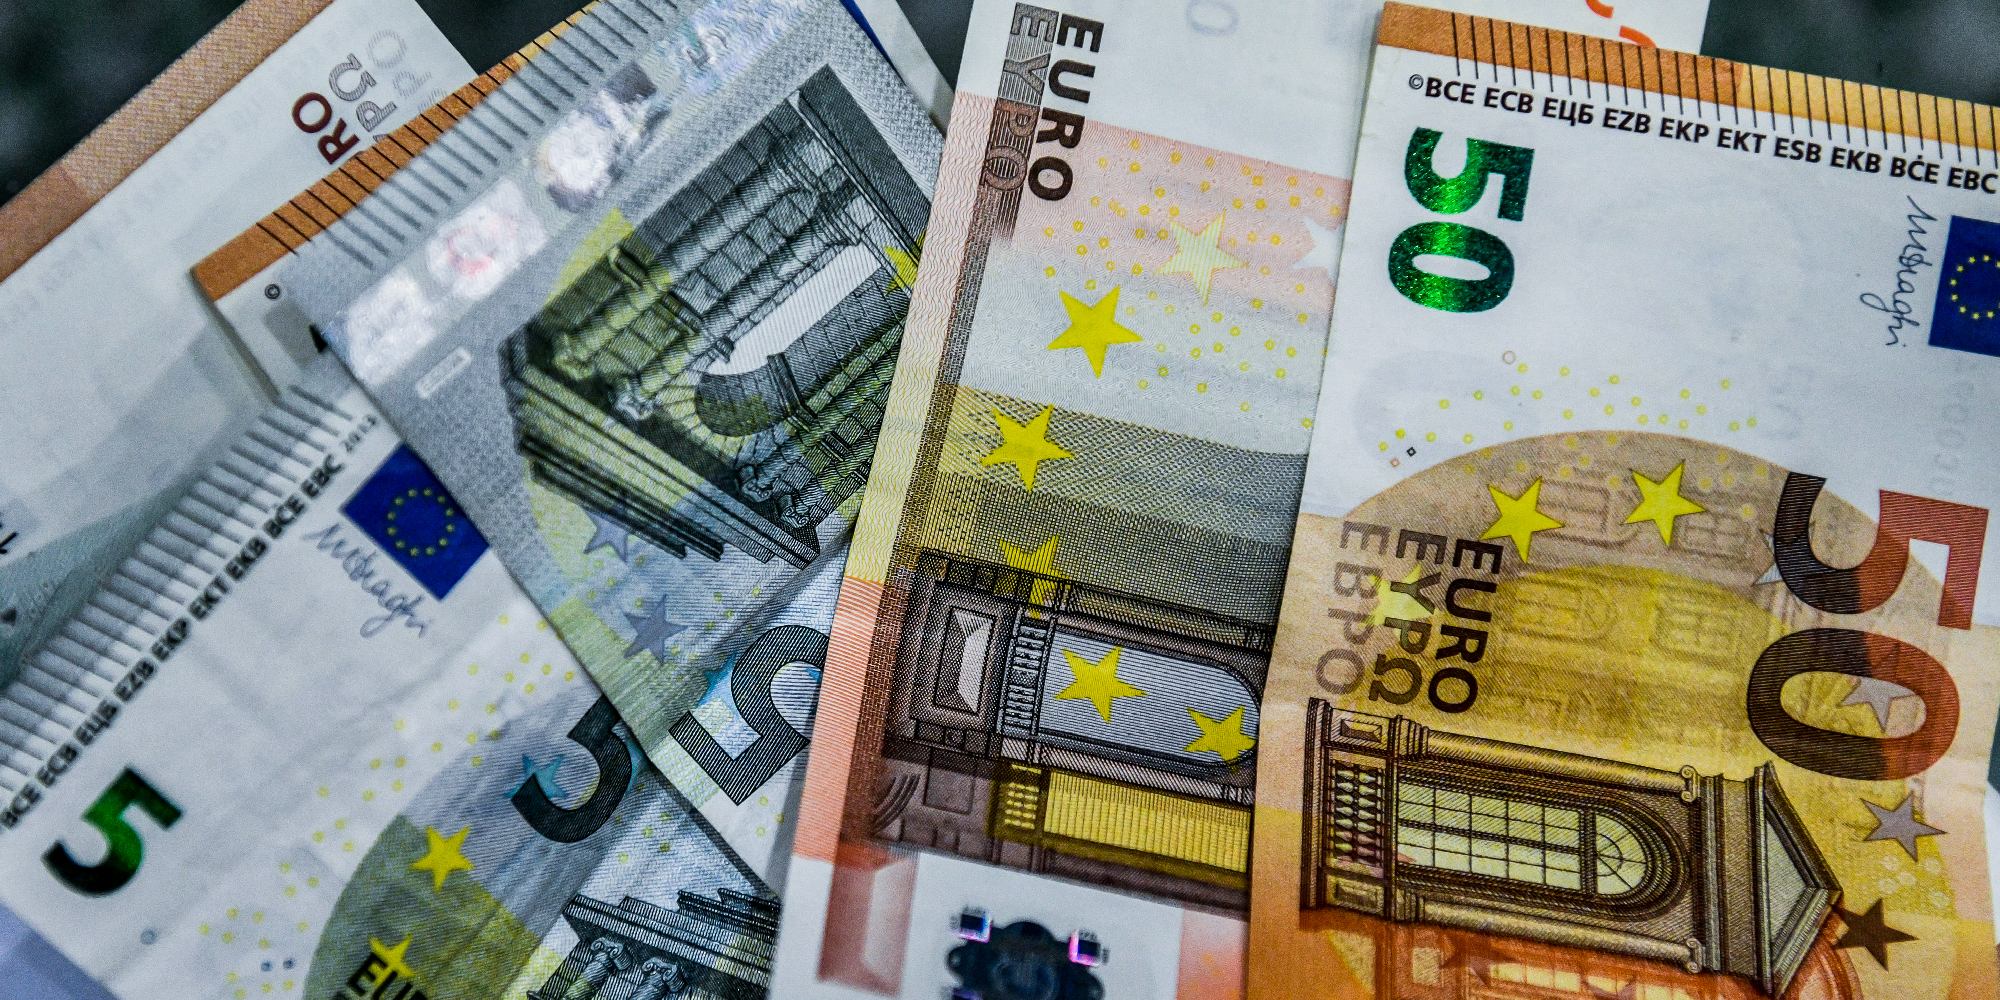 EURO XRHMATA 24 1 2022 - ΕΛΣΤΑΤ: Αυξημένο κατά 6,2% το διαθέσιμο εισόδημα των νοικοκυριών